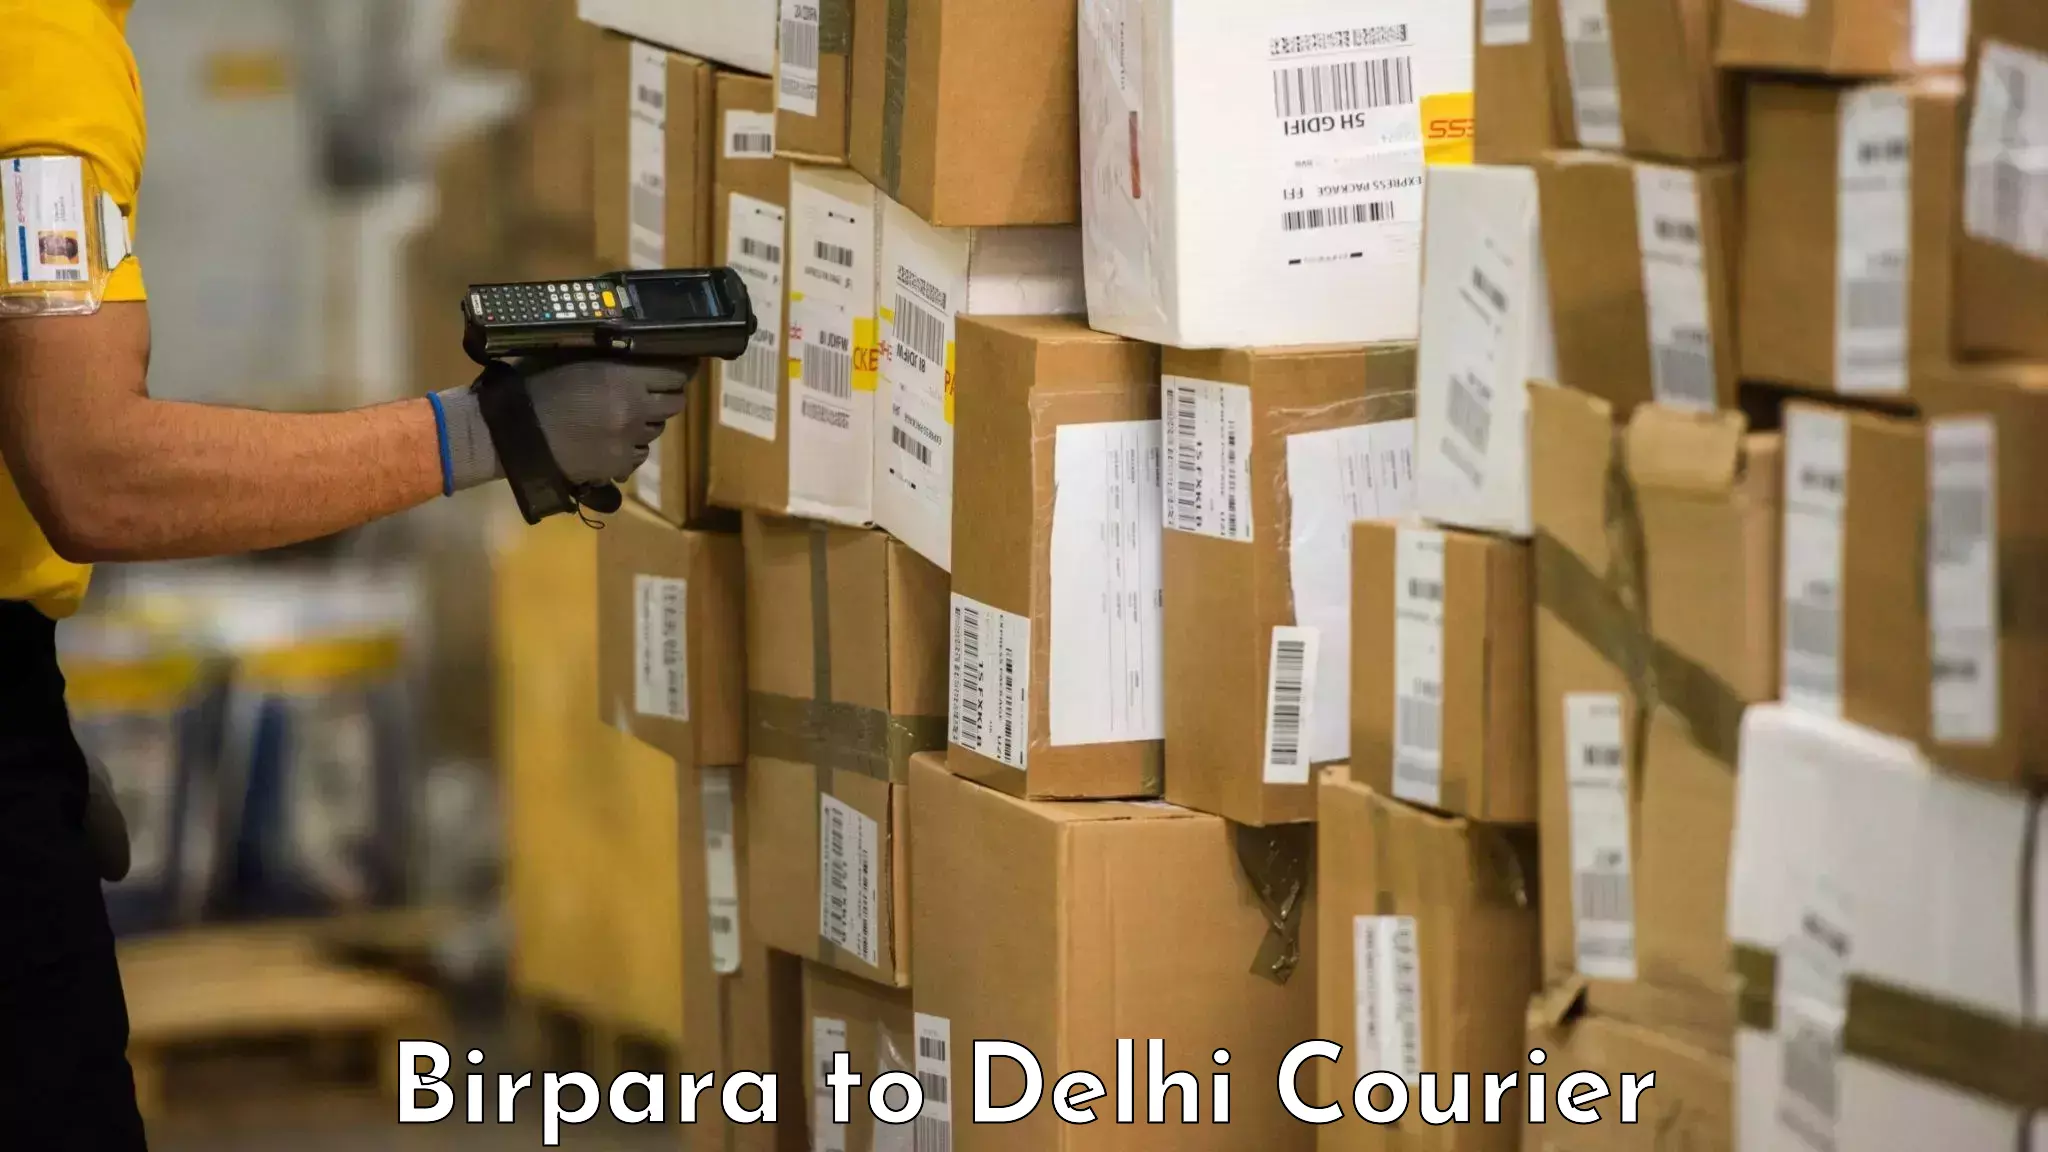 Door-to-door baggage service Birpara to NIT Delhi